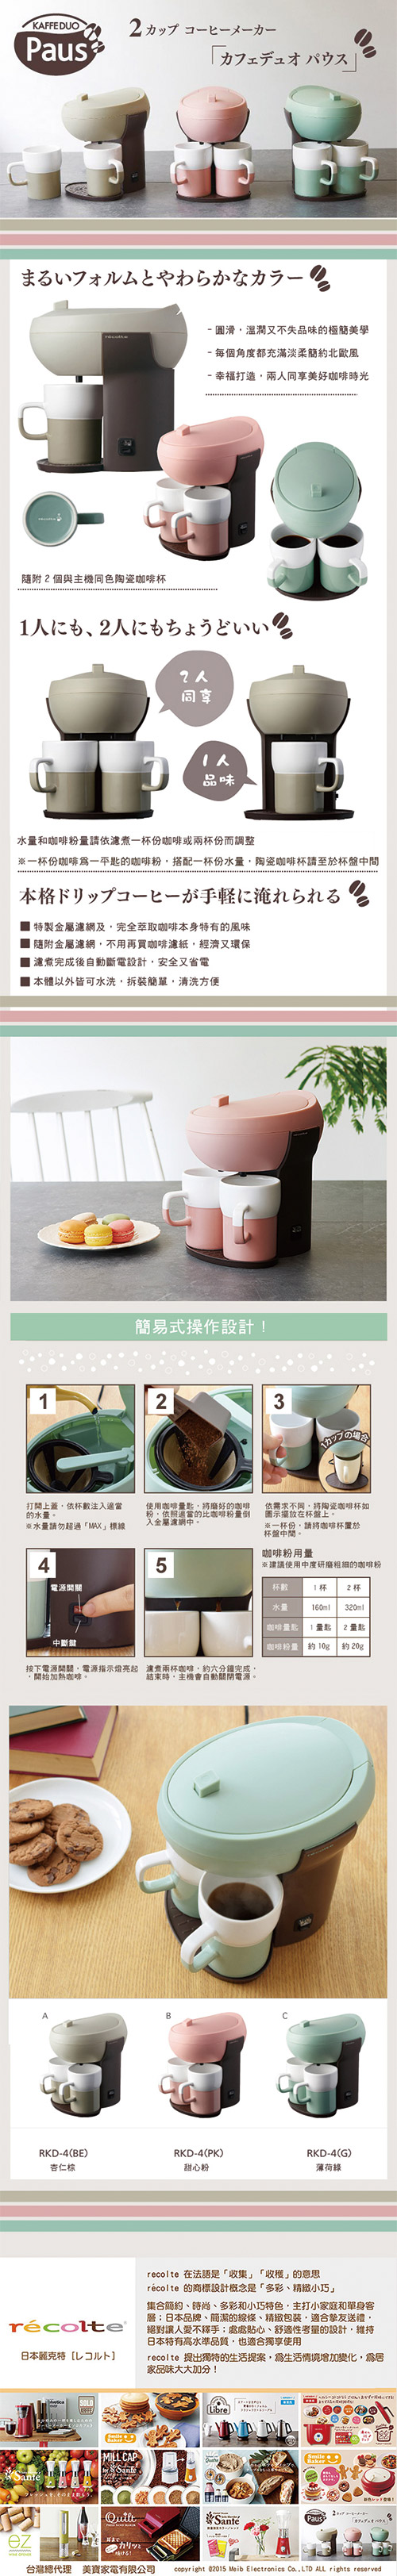 日本 recolte Kaffe Duo Paus 雙人咖啡機 甜心粉